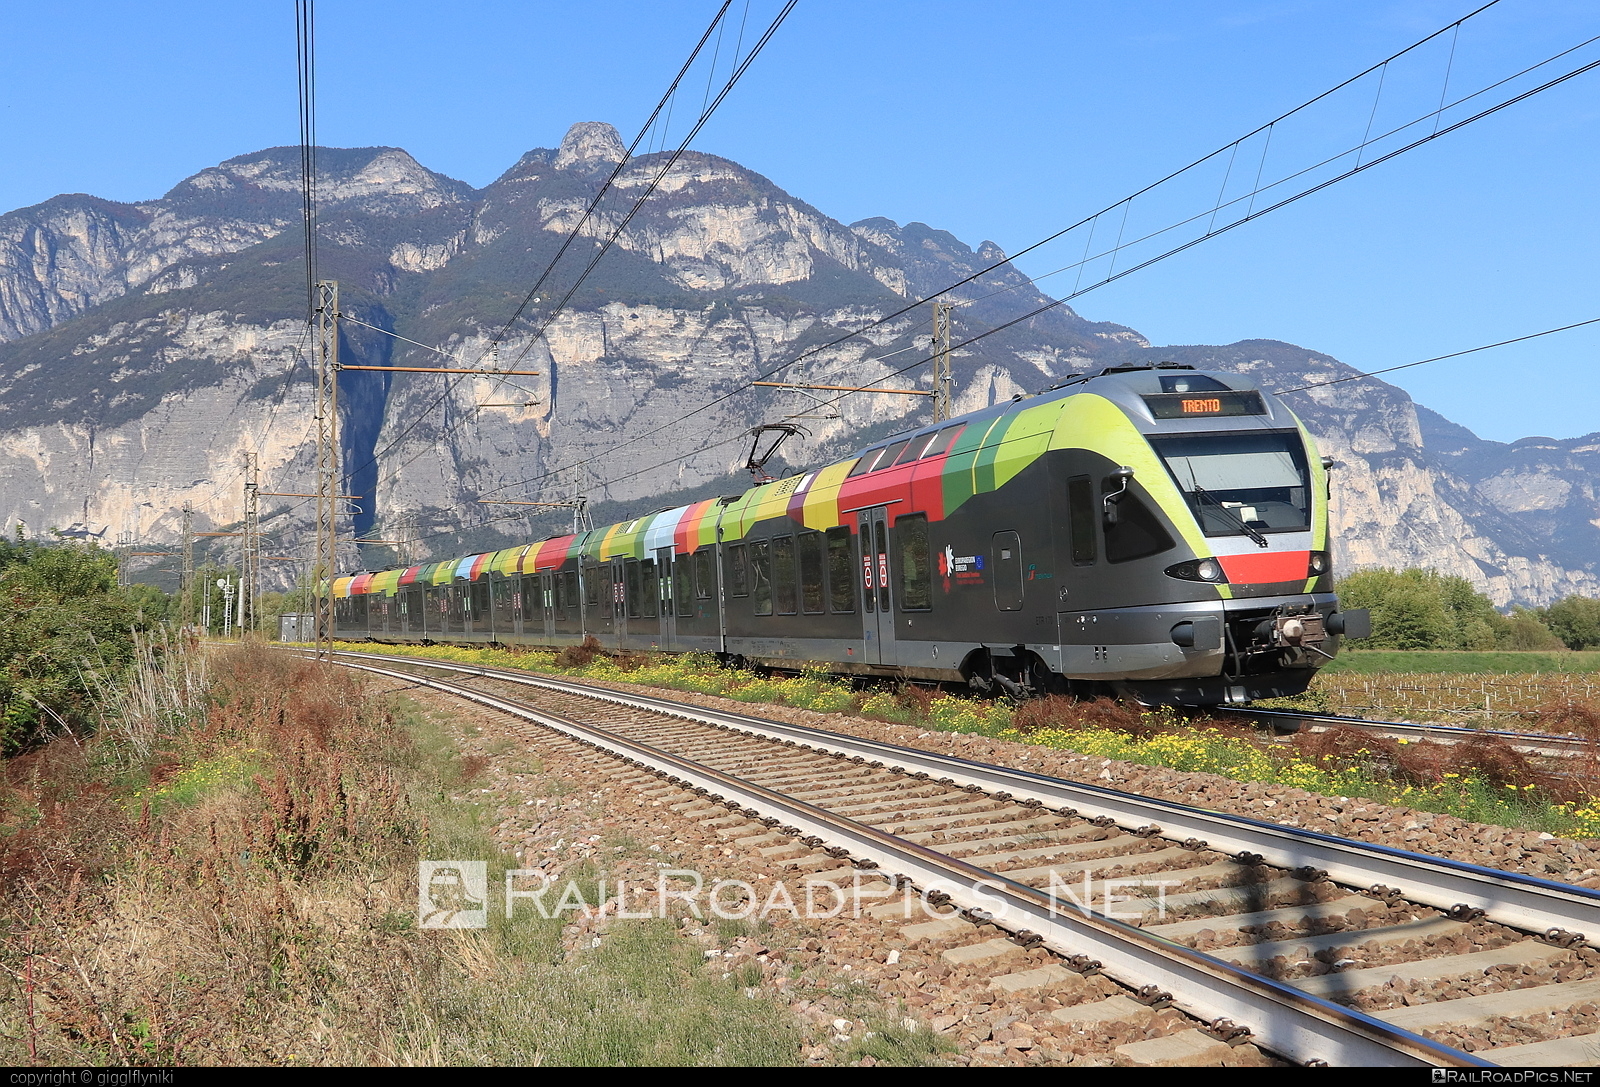 Stadler FLIRT - 170 207 operated by SAD S.p.A. #ferroviedellostato #fs #fsitaliane #sad #stadler #stadlerFlirt #stadlerrail #stadlerrailag #trenitalia #trenitaliaspa